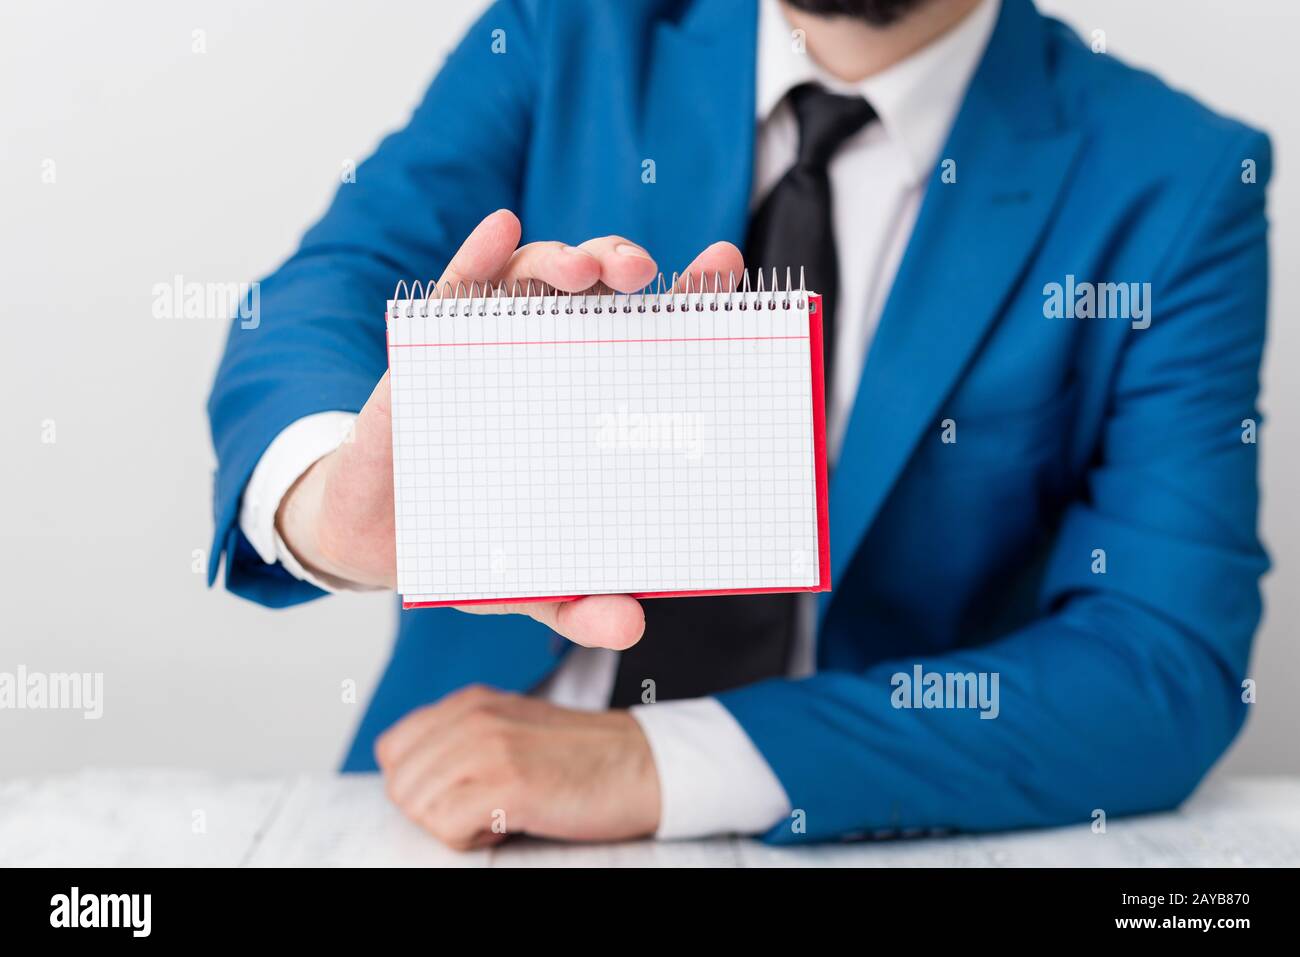 L'uomo tiene carta vuota con spazio per le copie davanti a lui. Concetto di business con l'uomo in una suite e una cravatta. Spazio bianco per pubblicità Foto Stock